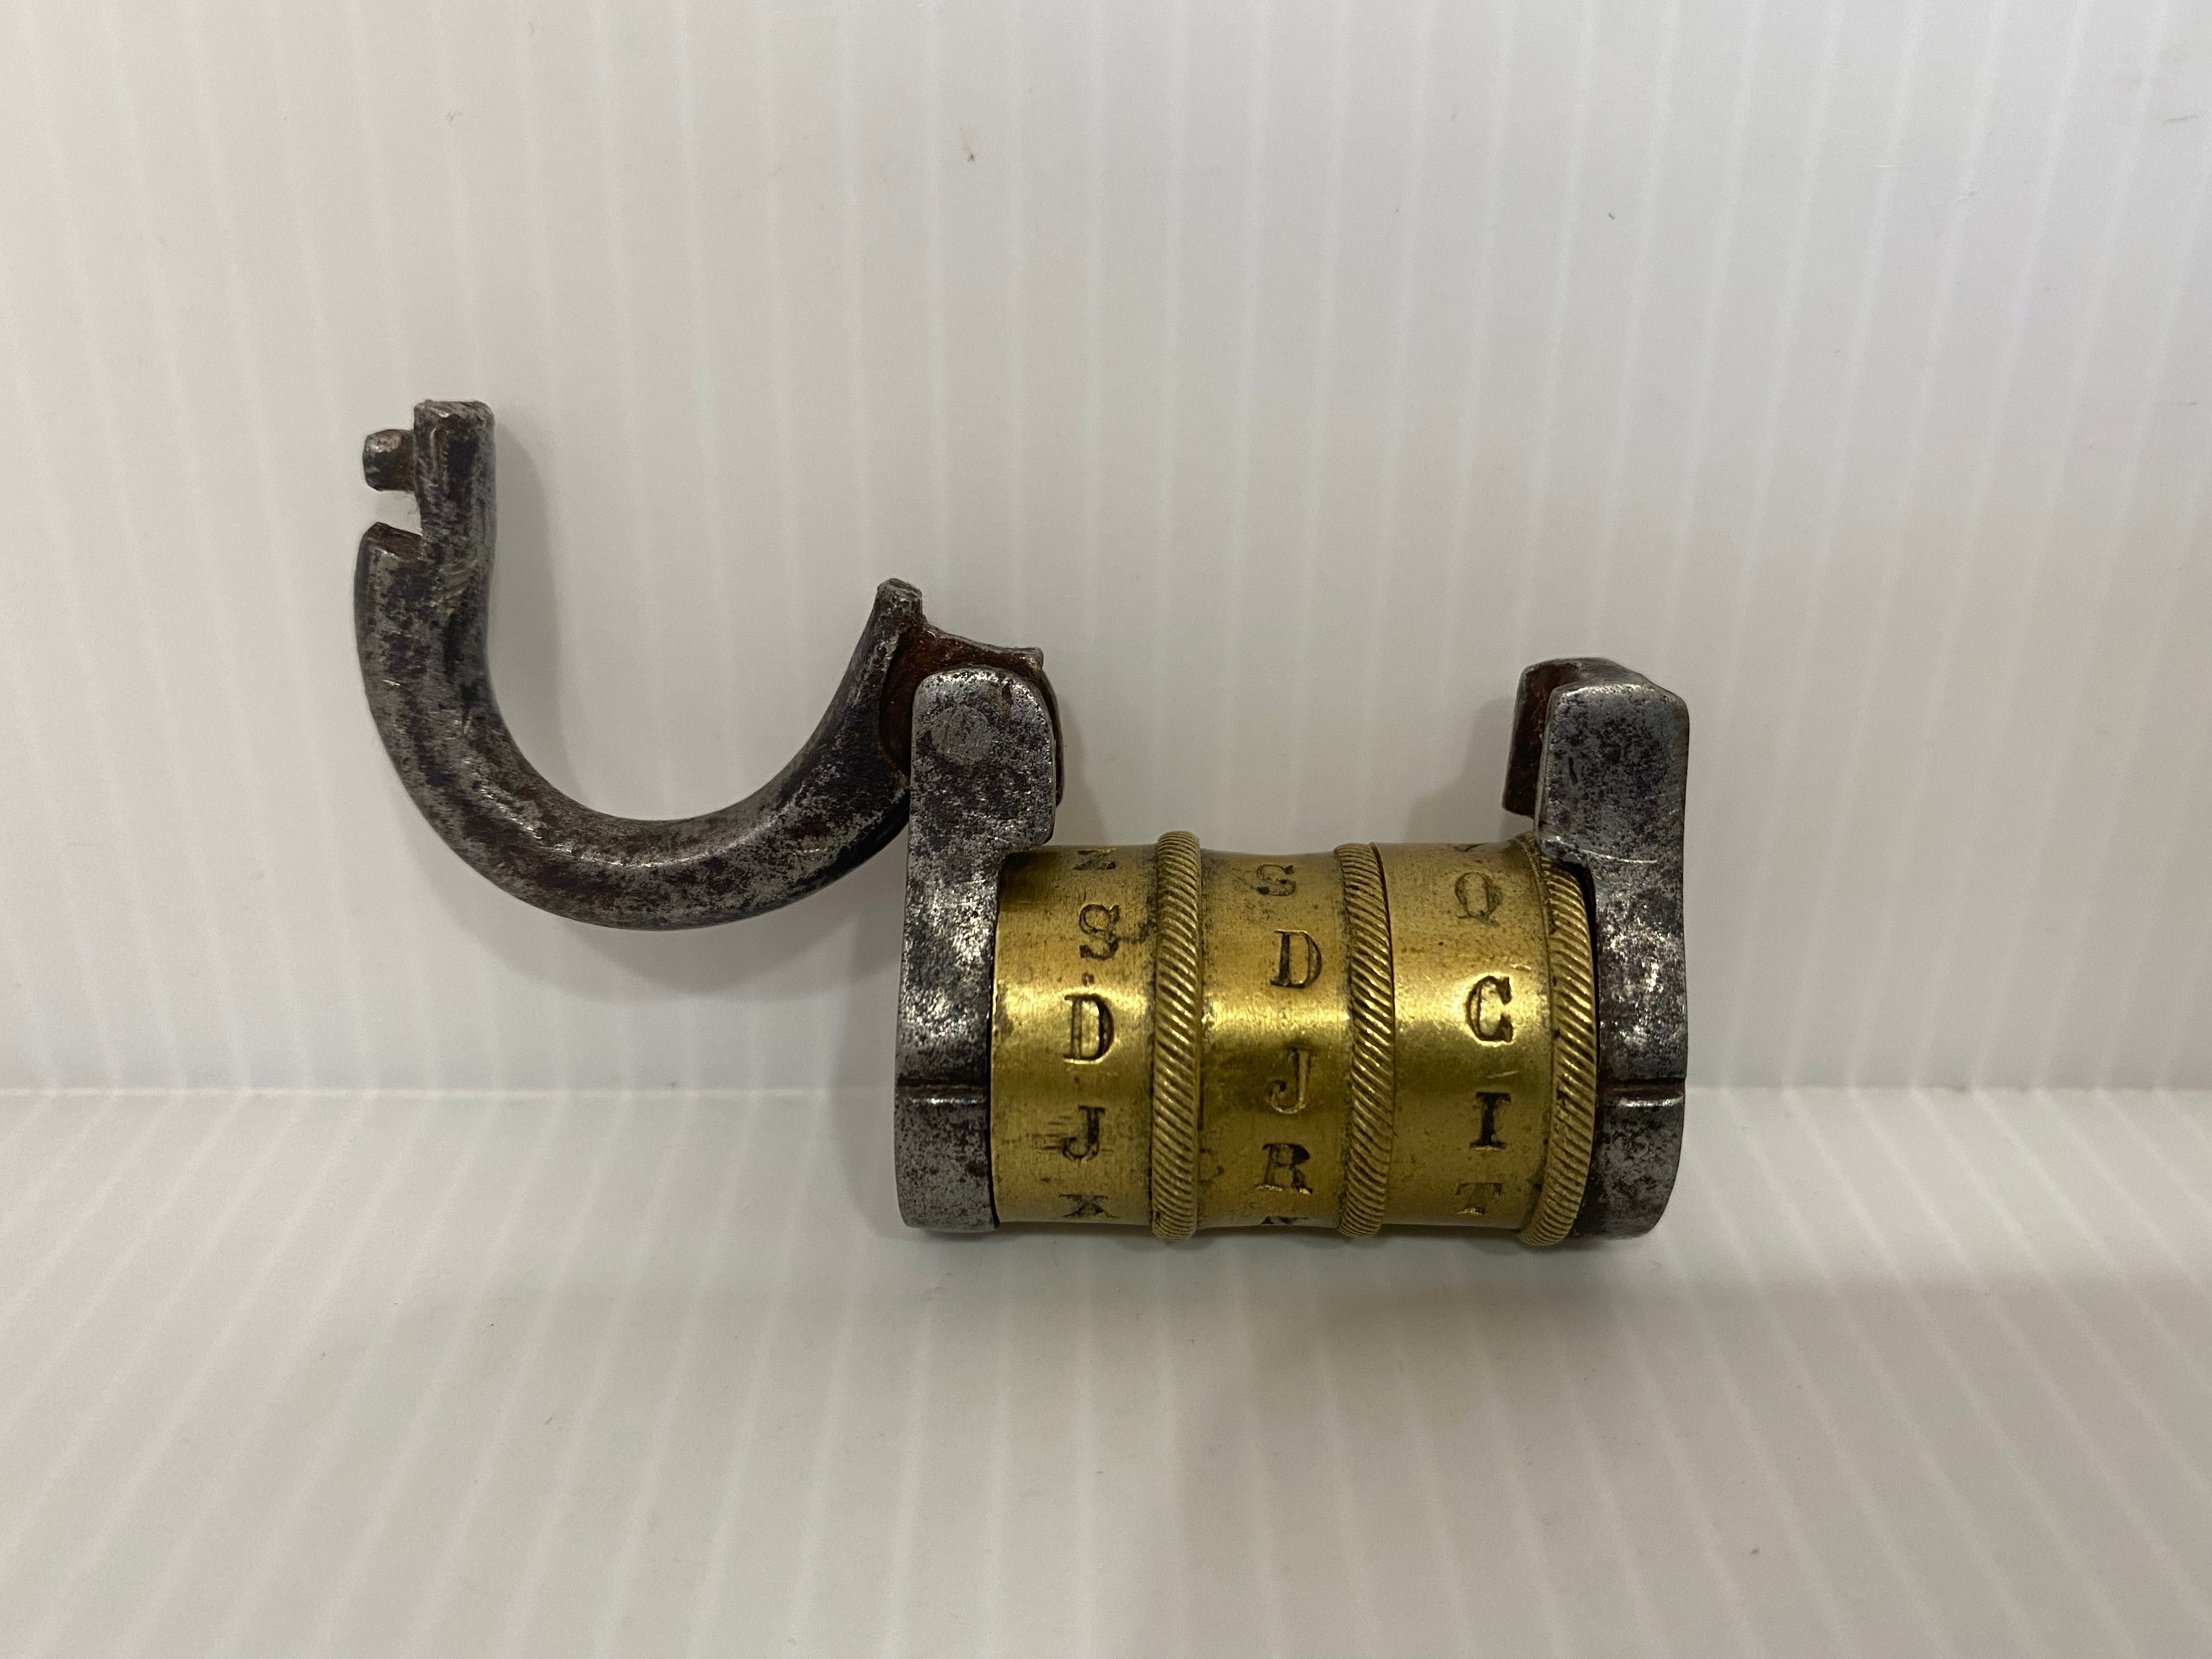 Antique bronze, 3 letter combination padlock